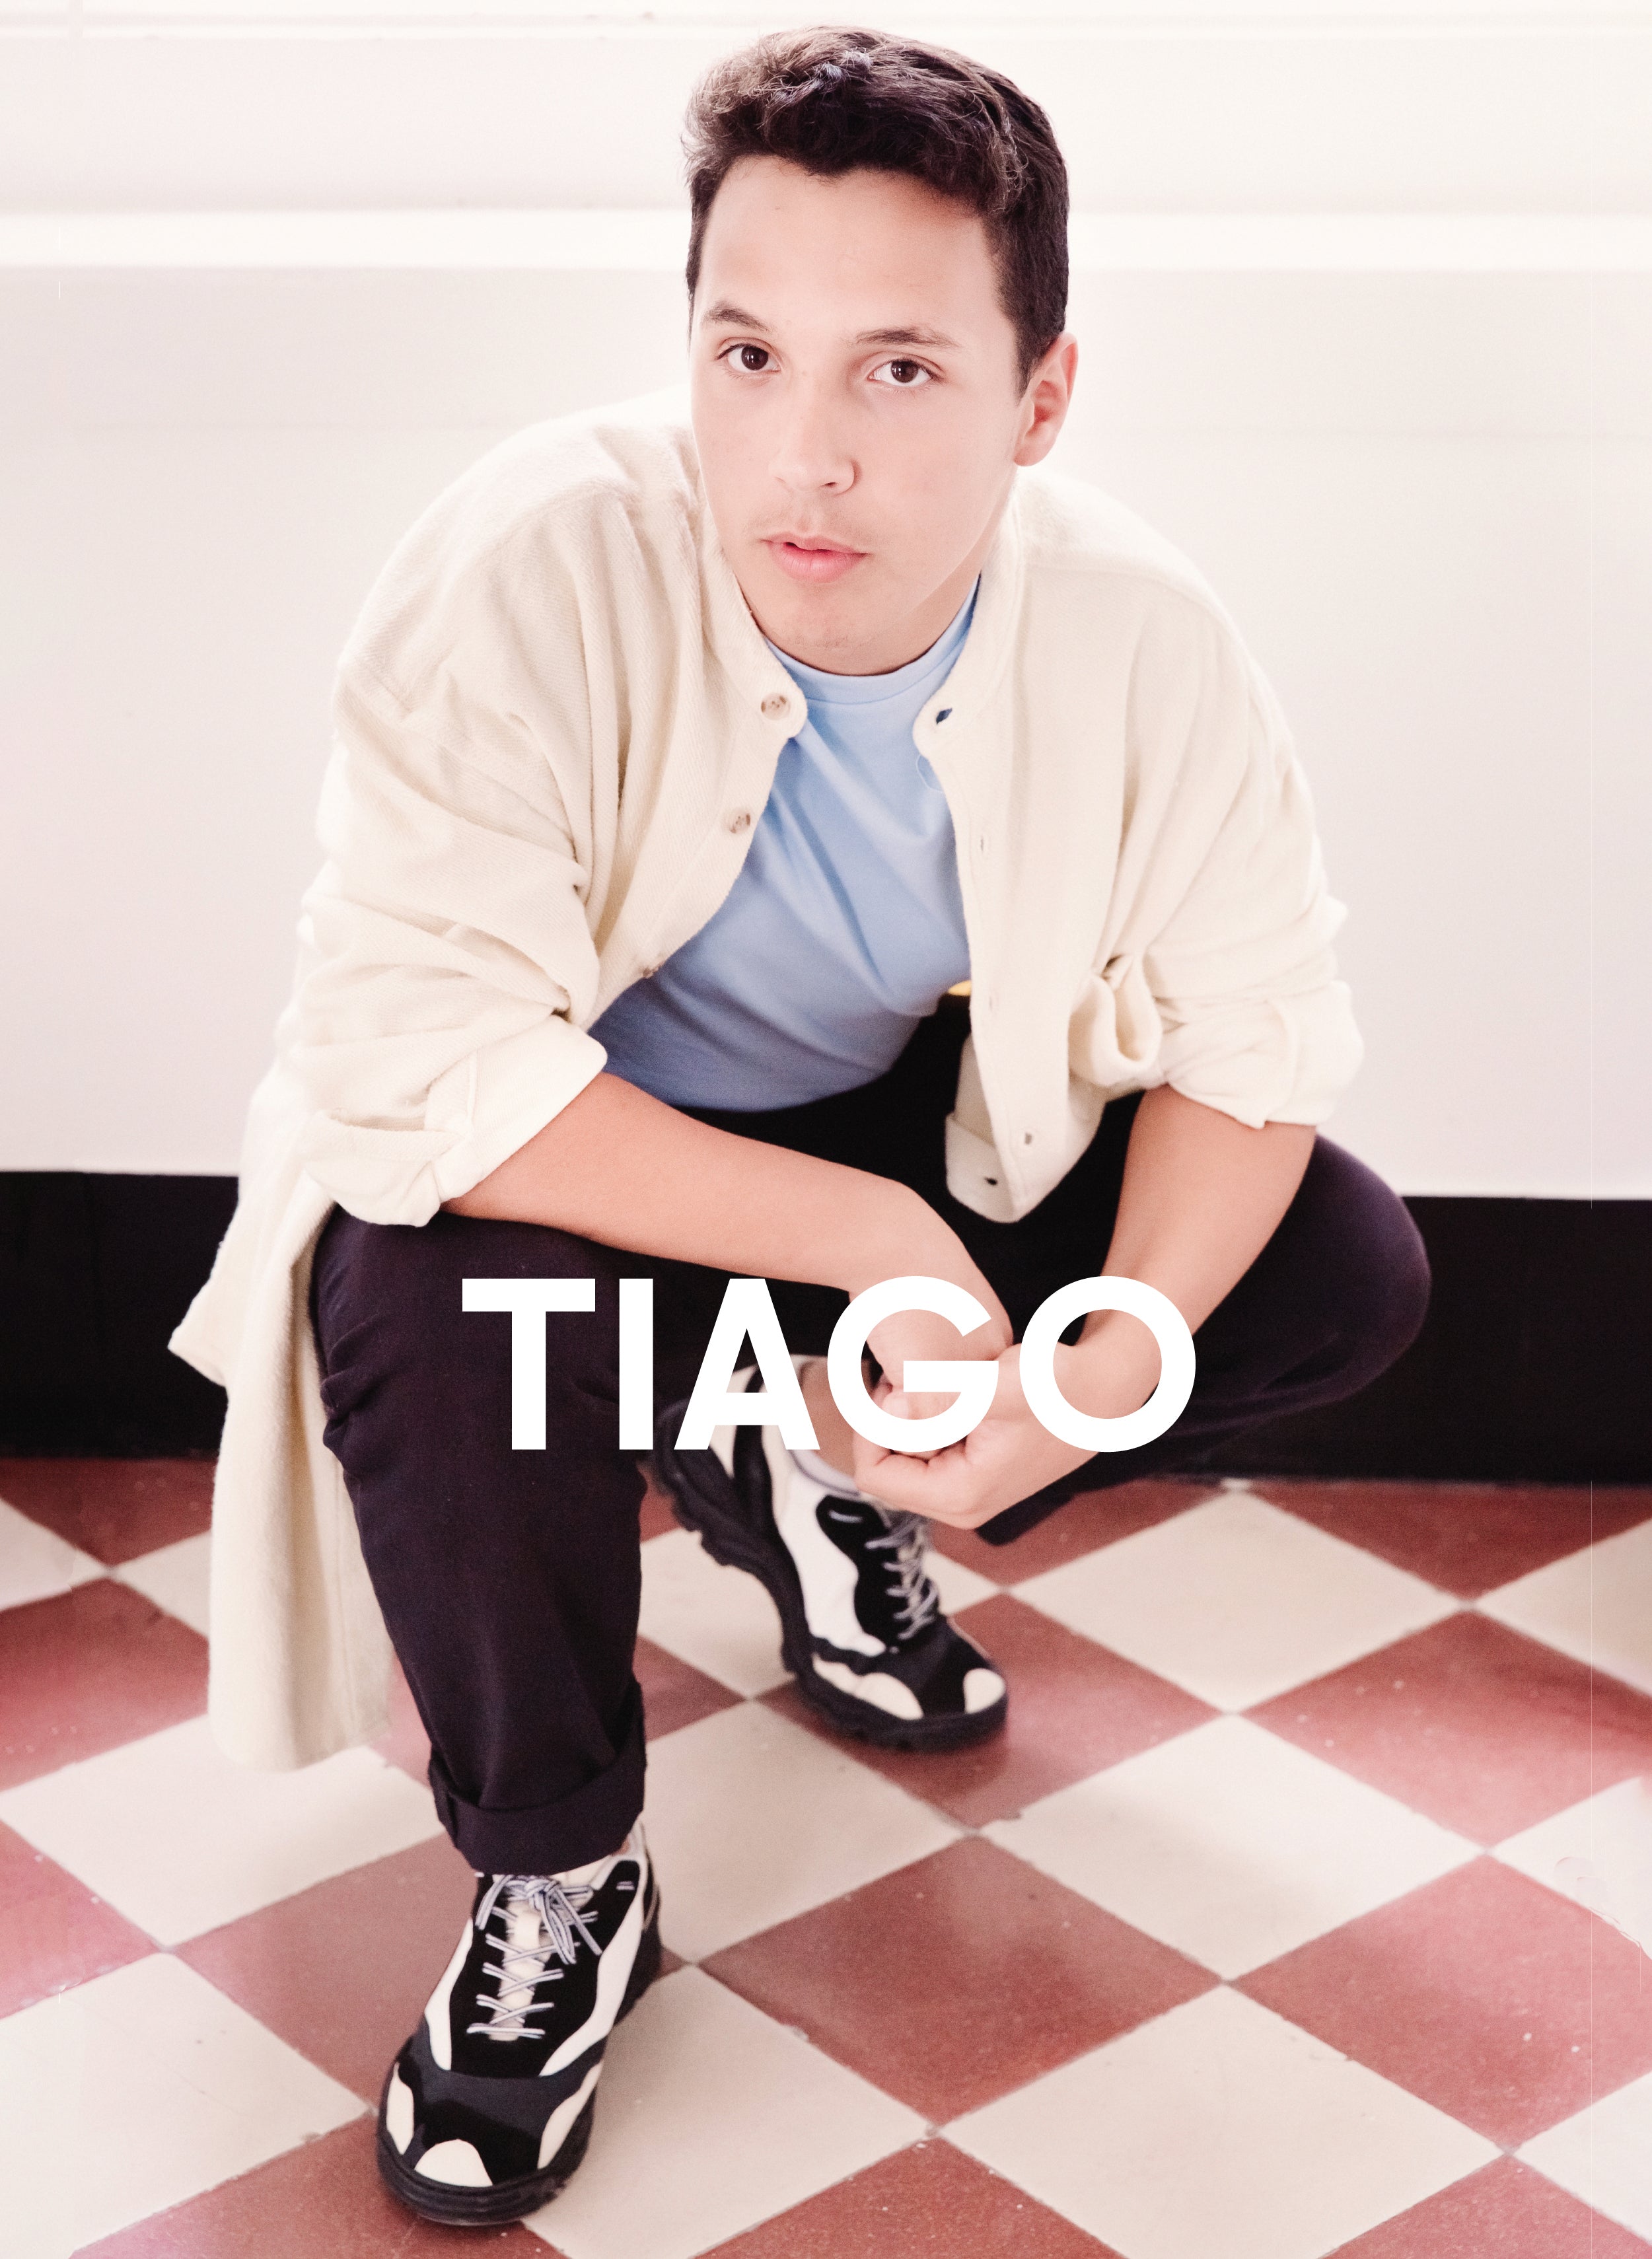 Tiago in blauem Hemd und schwarz Diverge sneakers Förderung der sozialen Wirkung und der maßgefertigten Schuhe durch das IMAGINE-Projekt.